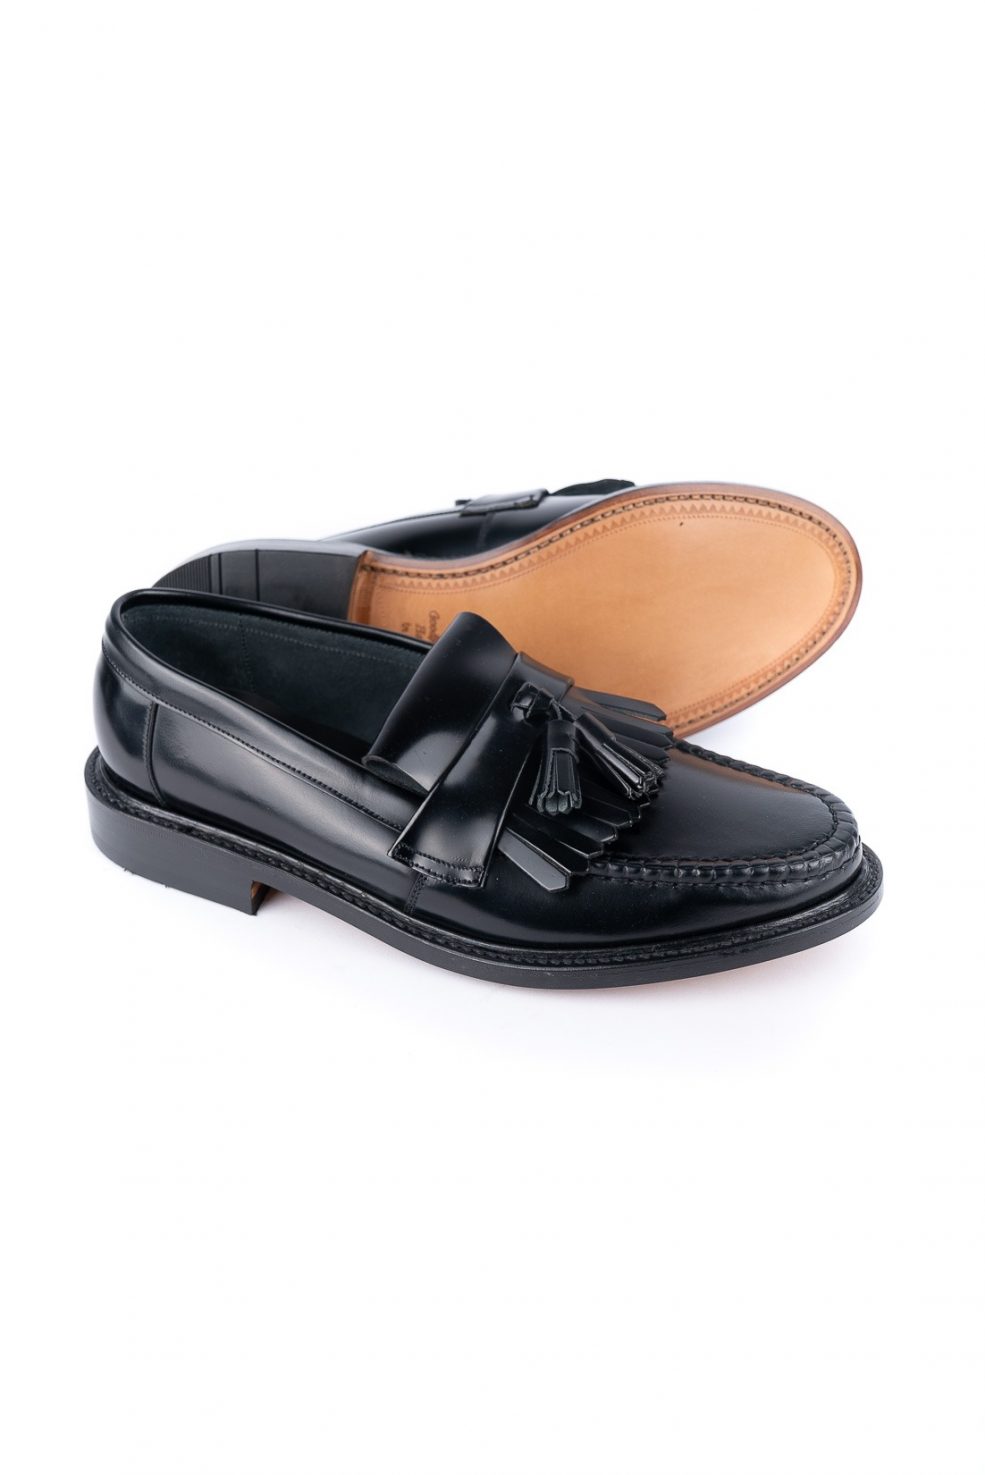 Loake Shoemakers Black Pinkomo